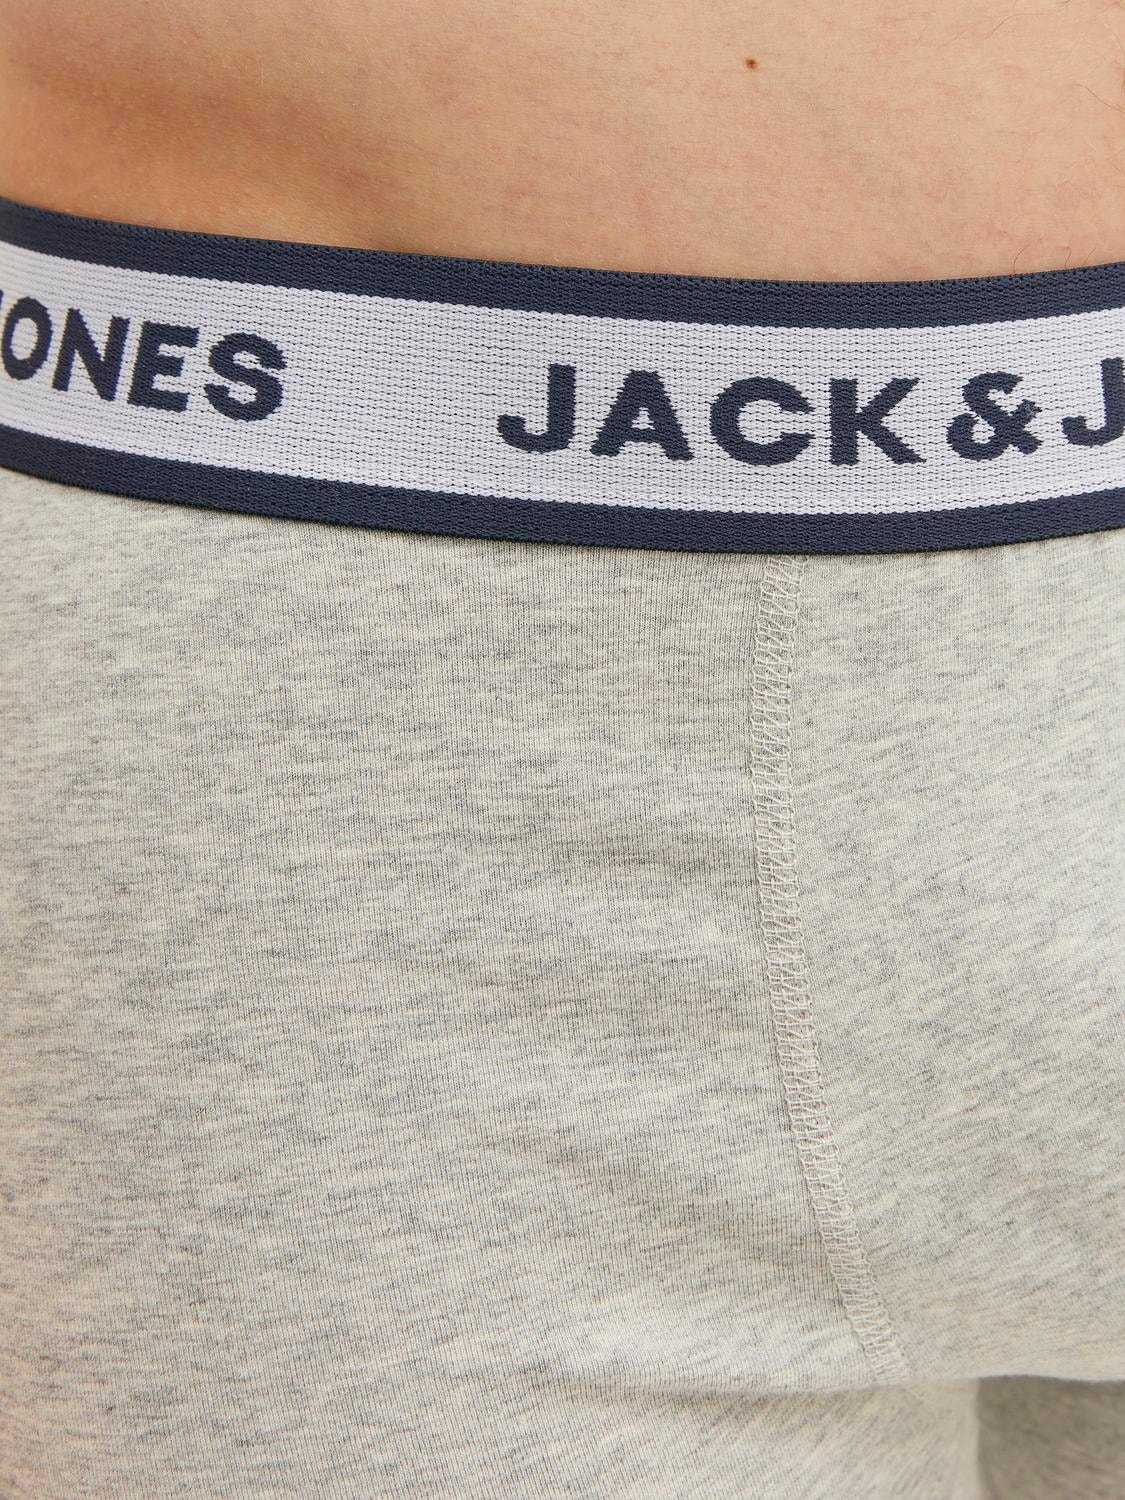 Jack & Jones 3-pakkainen Bokserimalliset alushousut -Light Grey Melange - 12229576